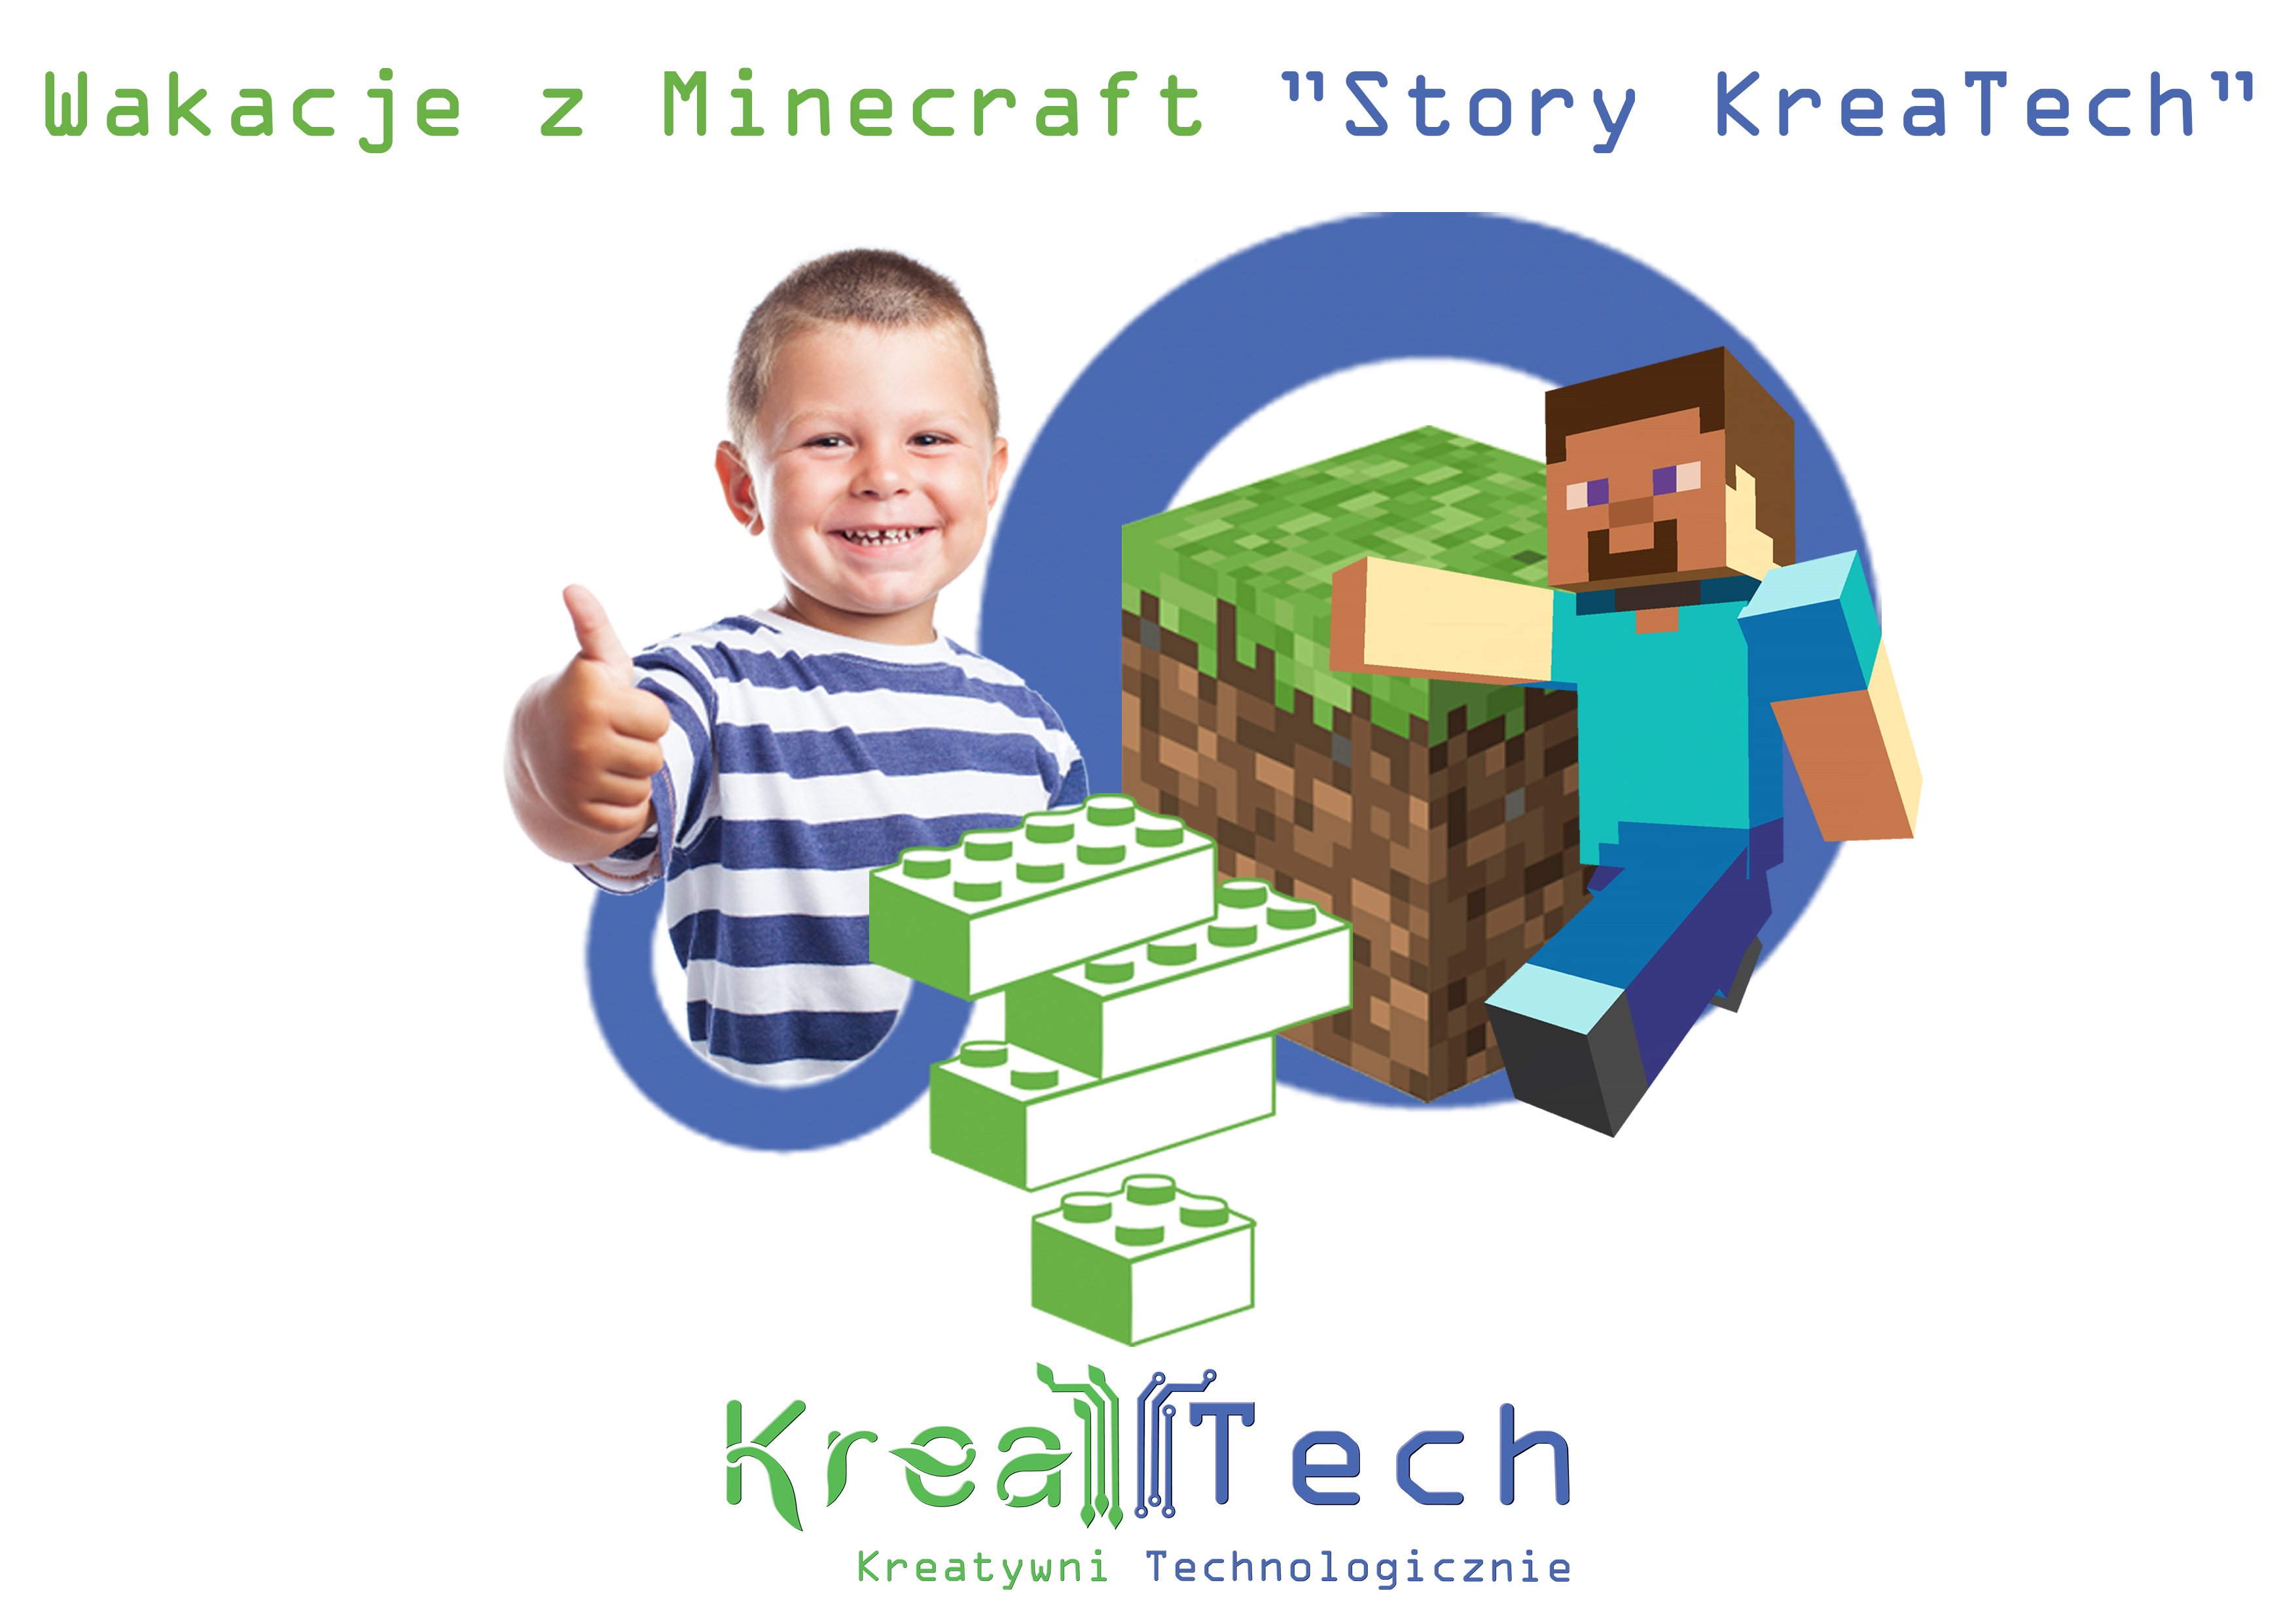 Wakacje z Minecraft: Story Kreatech